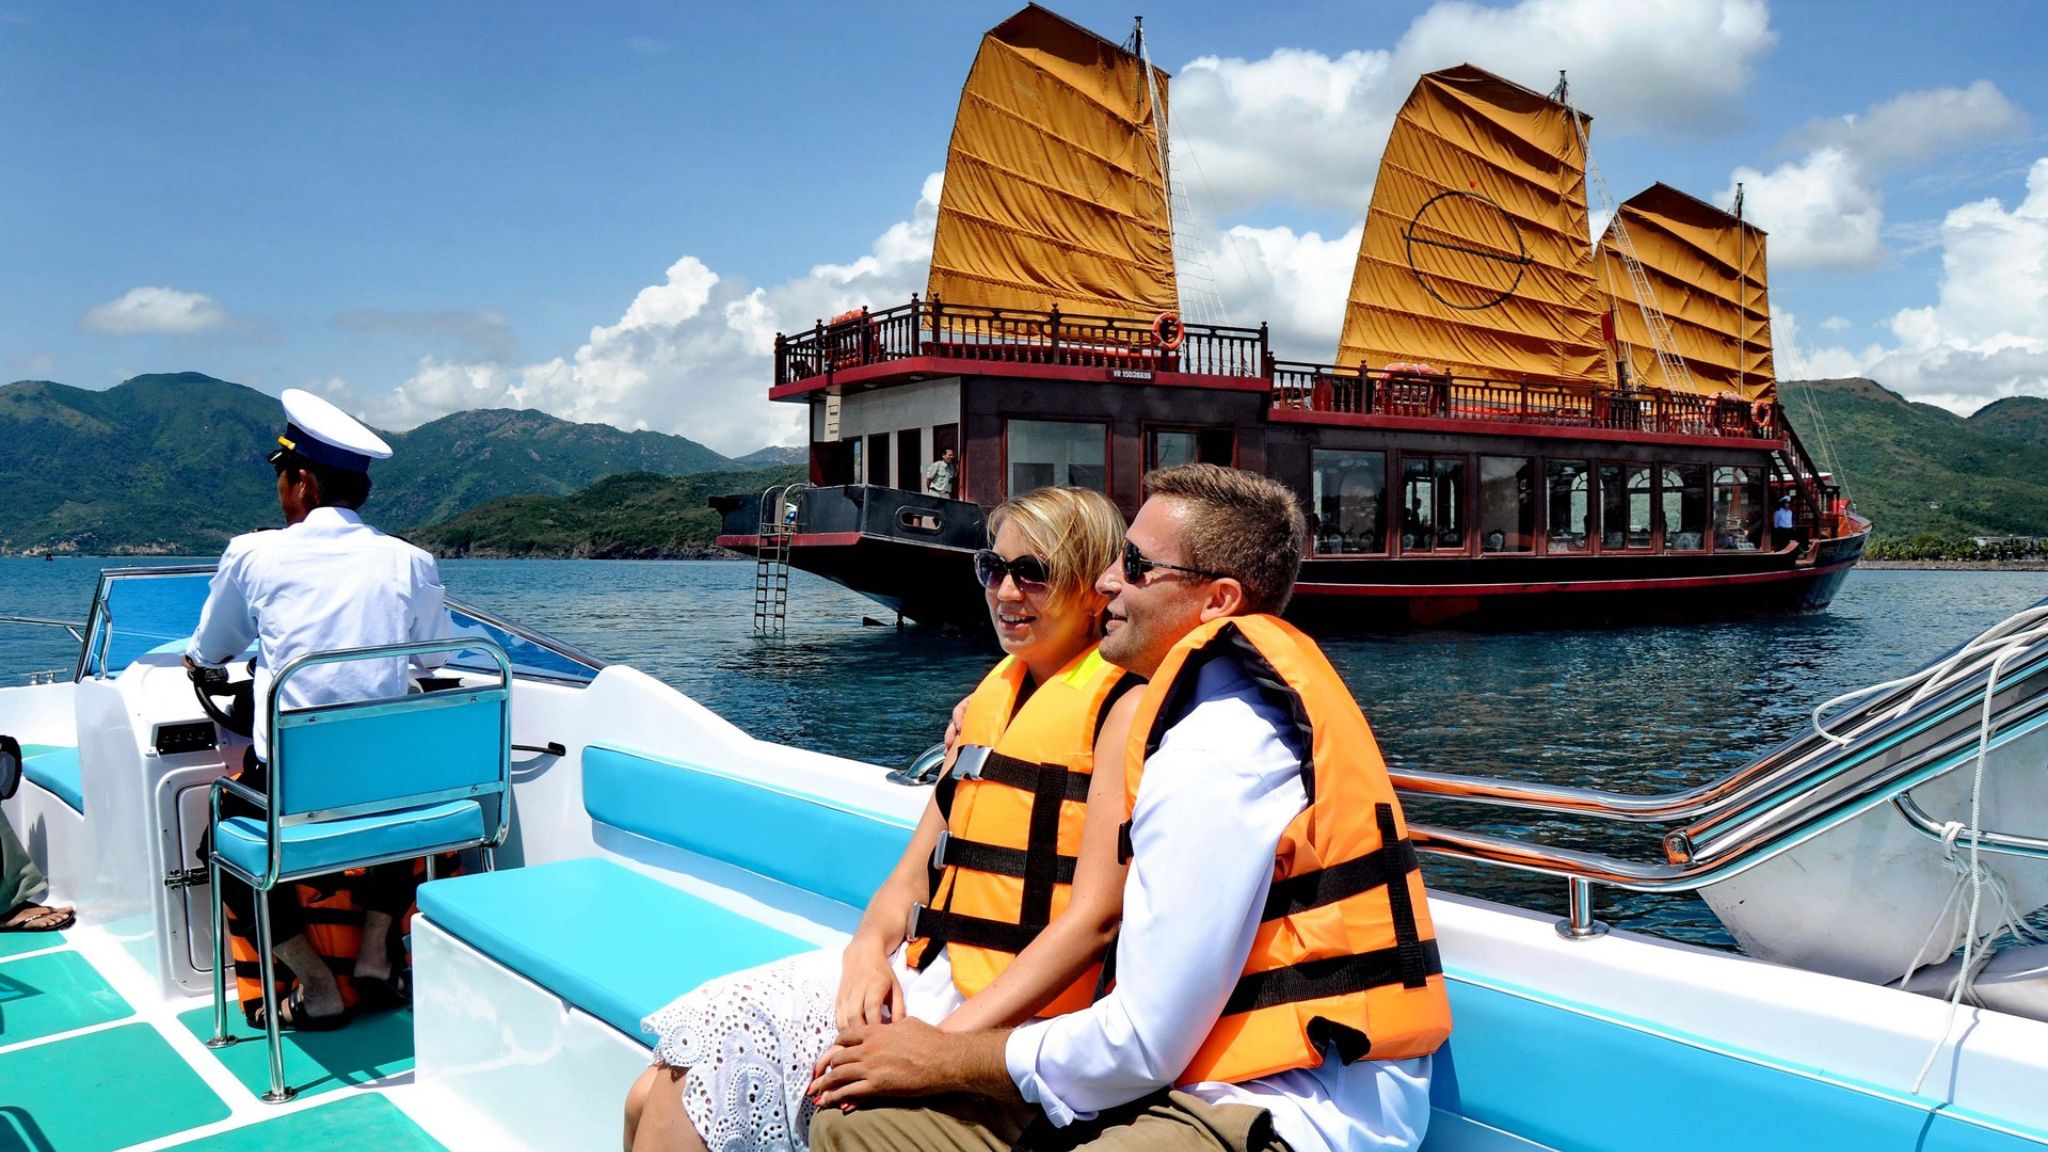 Day 11 Explore Nha Trang With Emperor Cruise